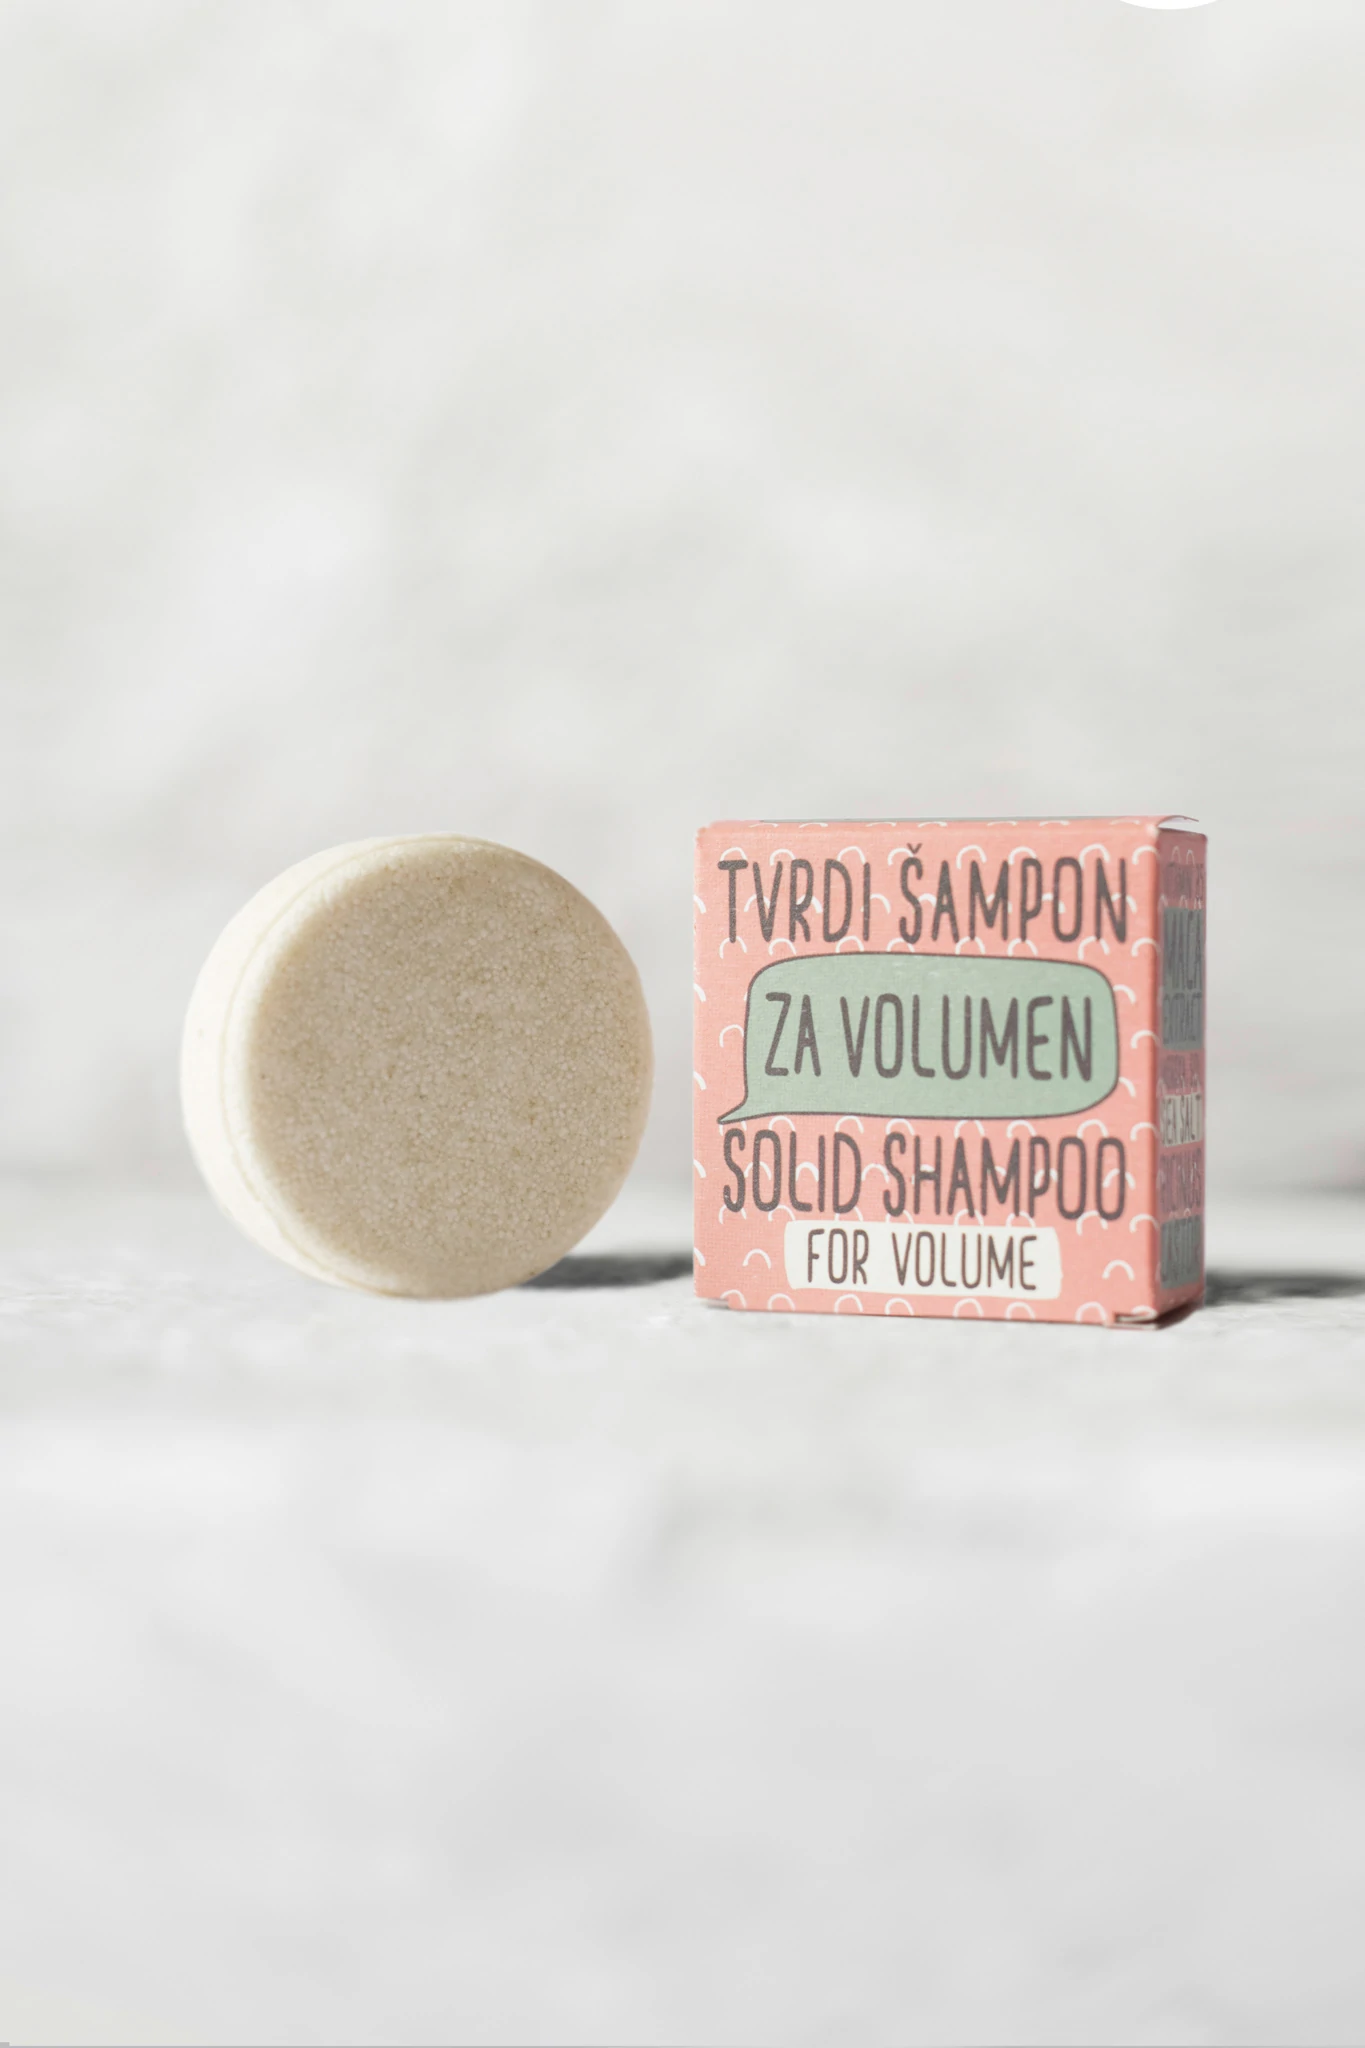 Sapunoteka Solid Hair Shampoo for Volume & Strengthening Hair